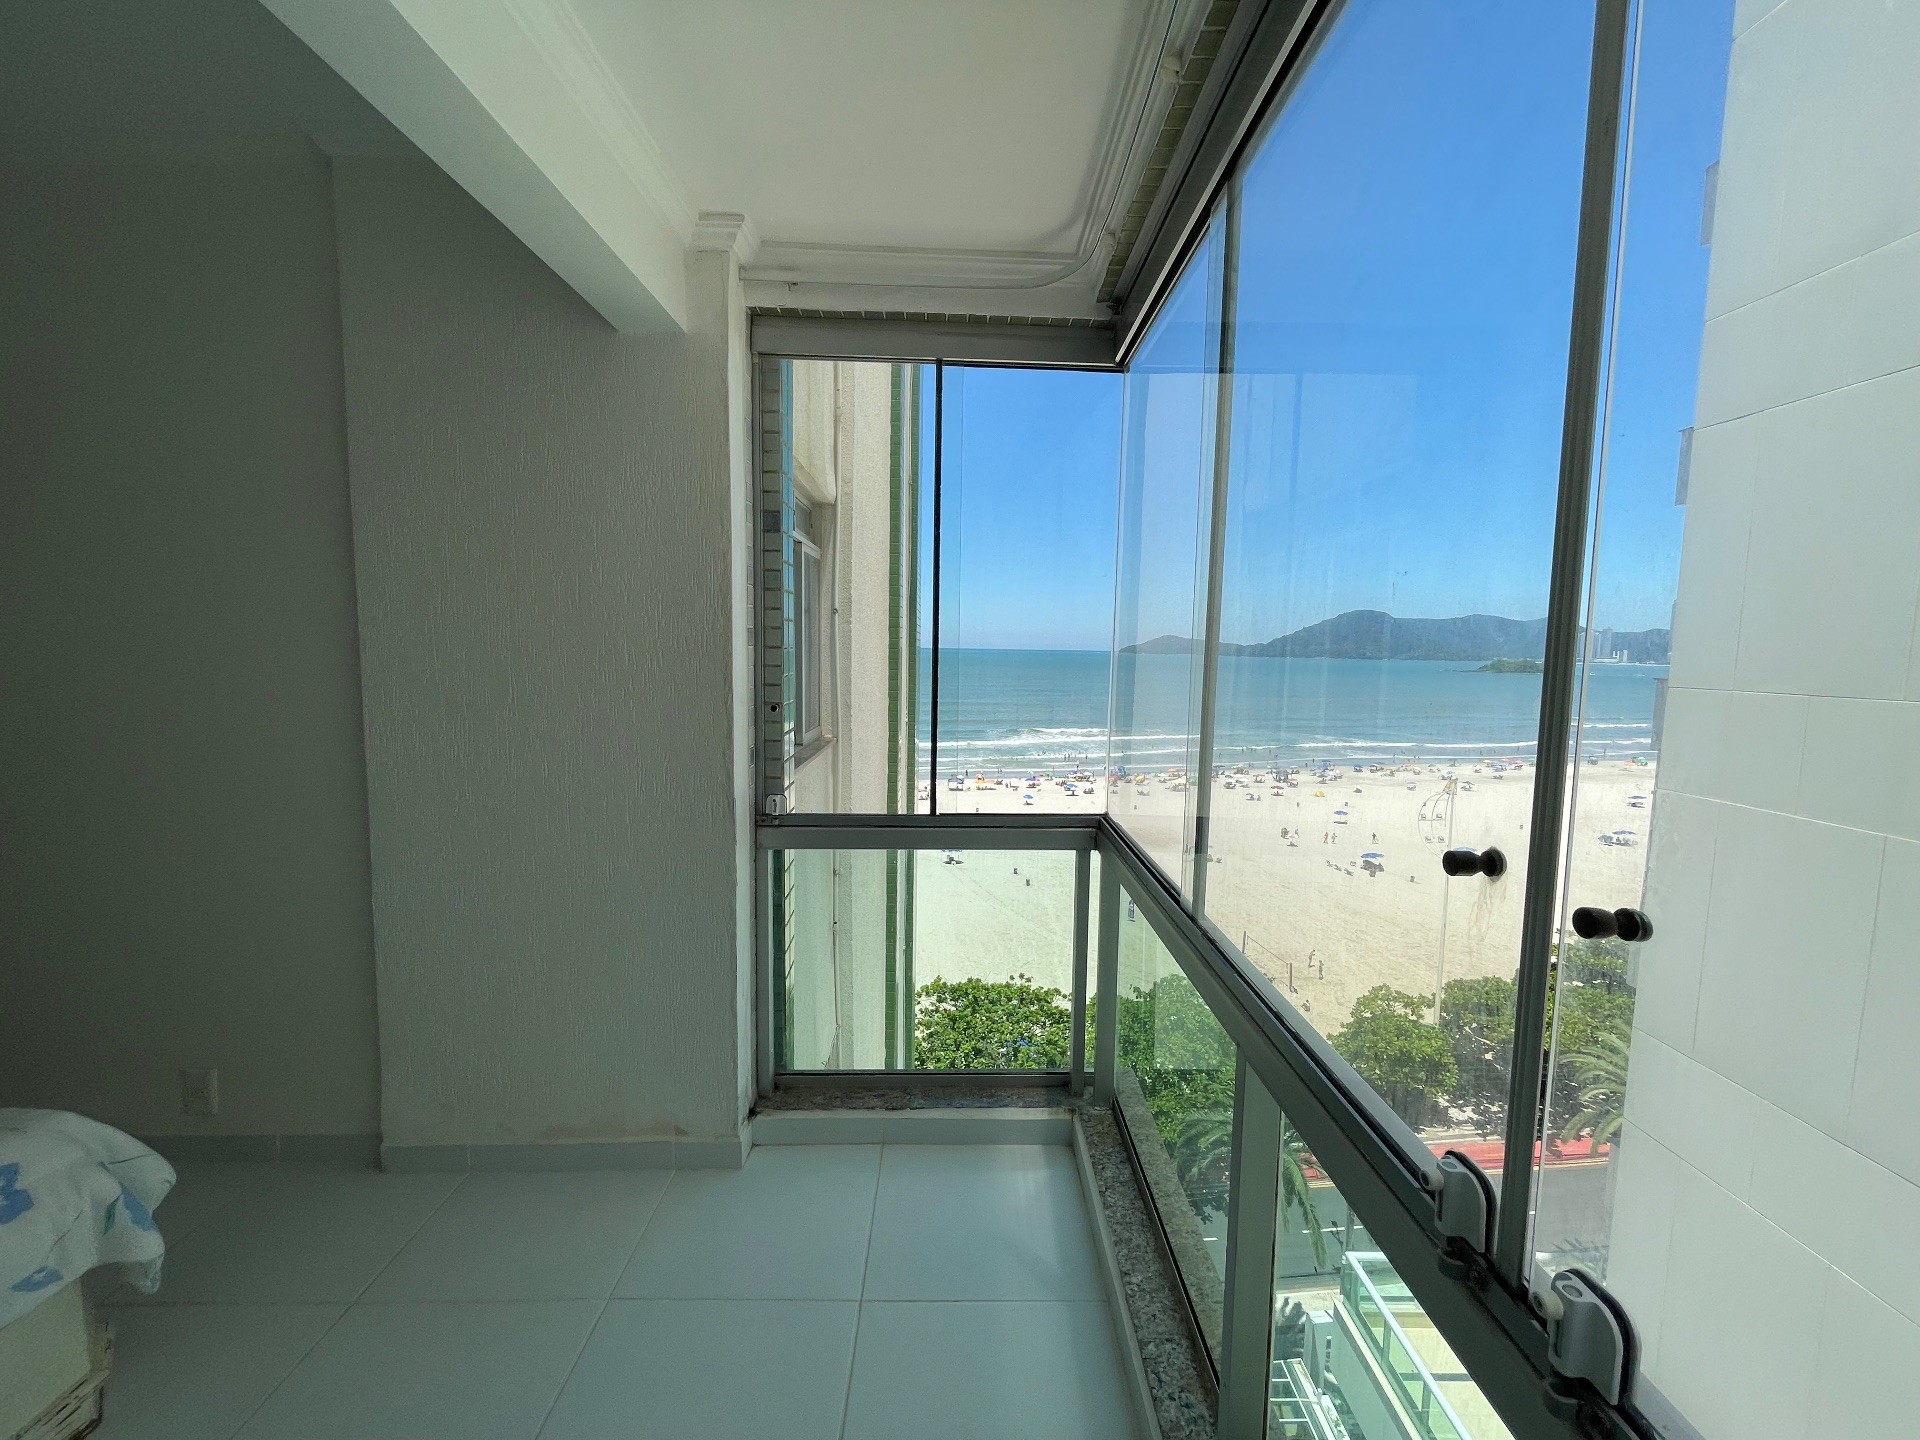 Apartamento a venda em Prédio Frente Mar , com 02 Dormitórios sendo 01 Suíte e mais Dependência e 01 vaga de garagem privativa em Balneário Camboriú SC  